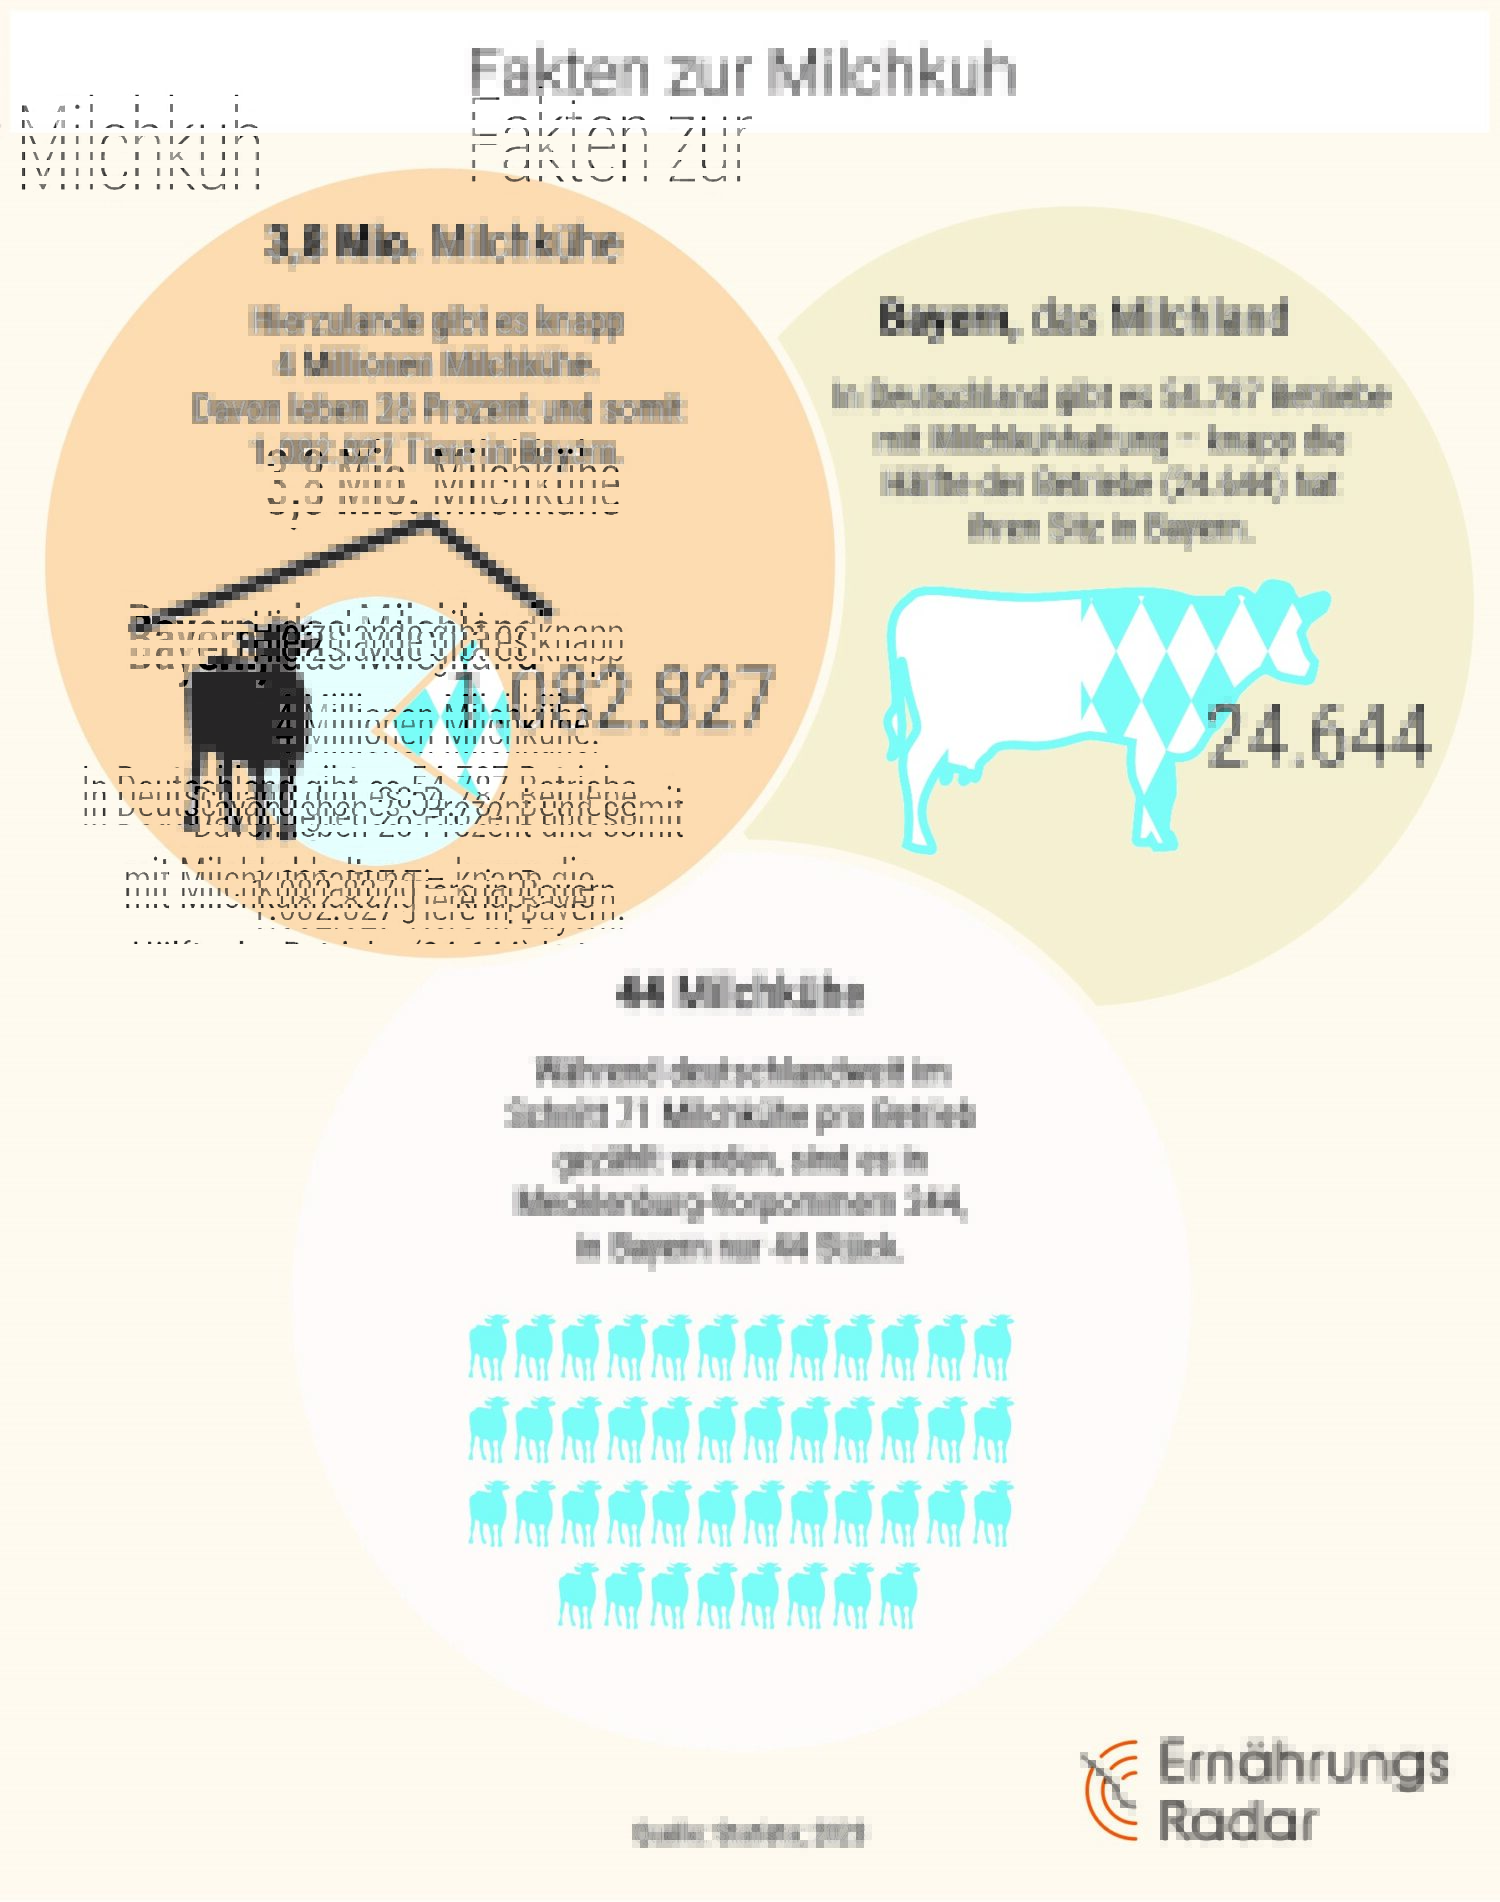 Infografik mit Fakten zur Milchkuh in Bayern und Deutschland: Anzahl Kühe, Betriebe und Durchschnitt pro Betrieb.